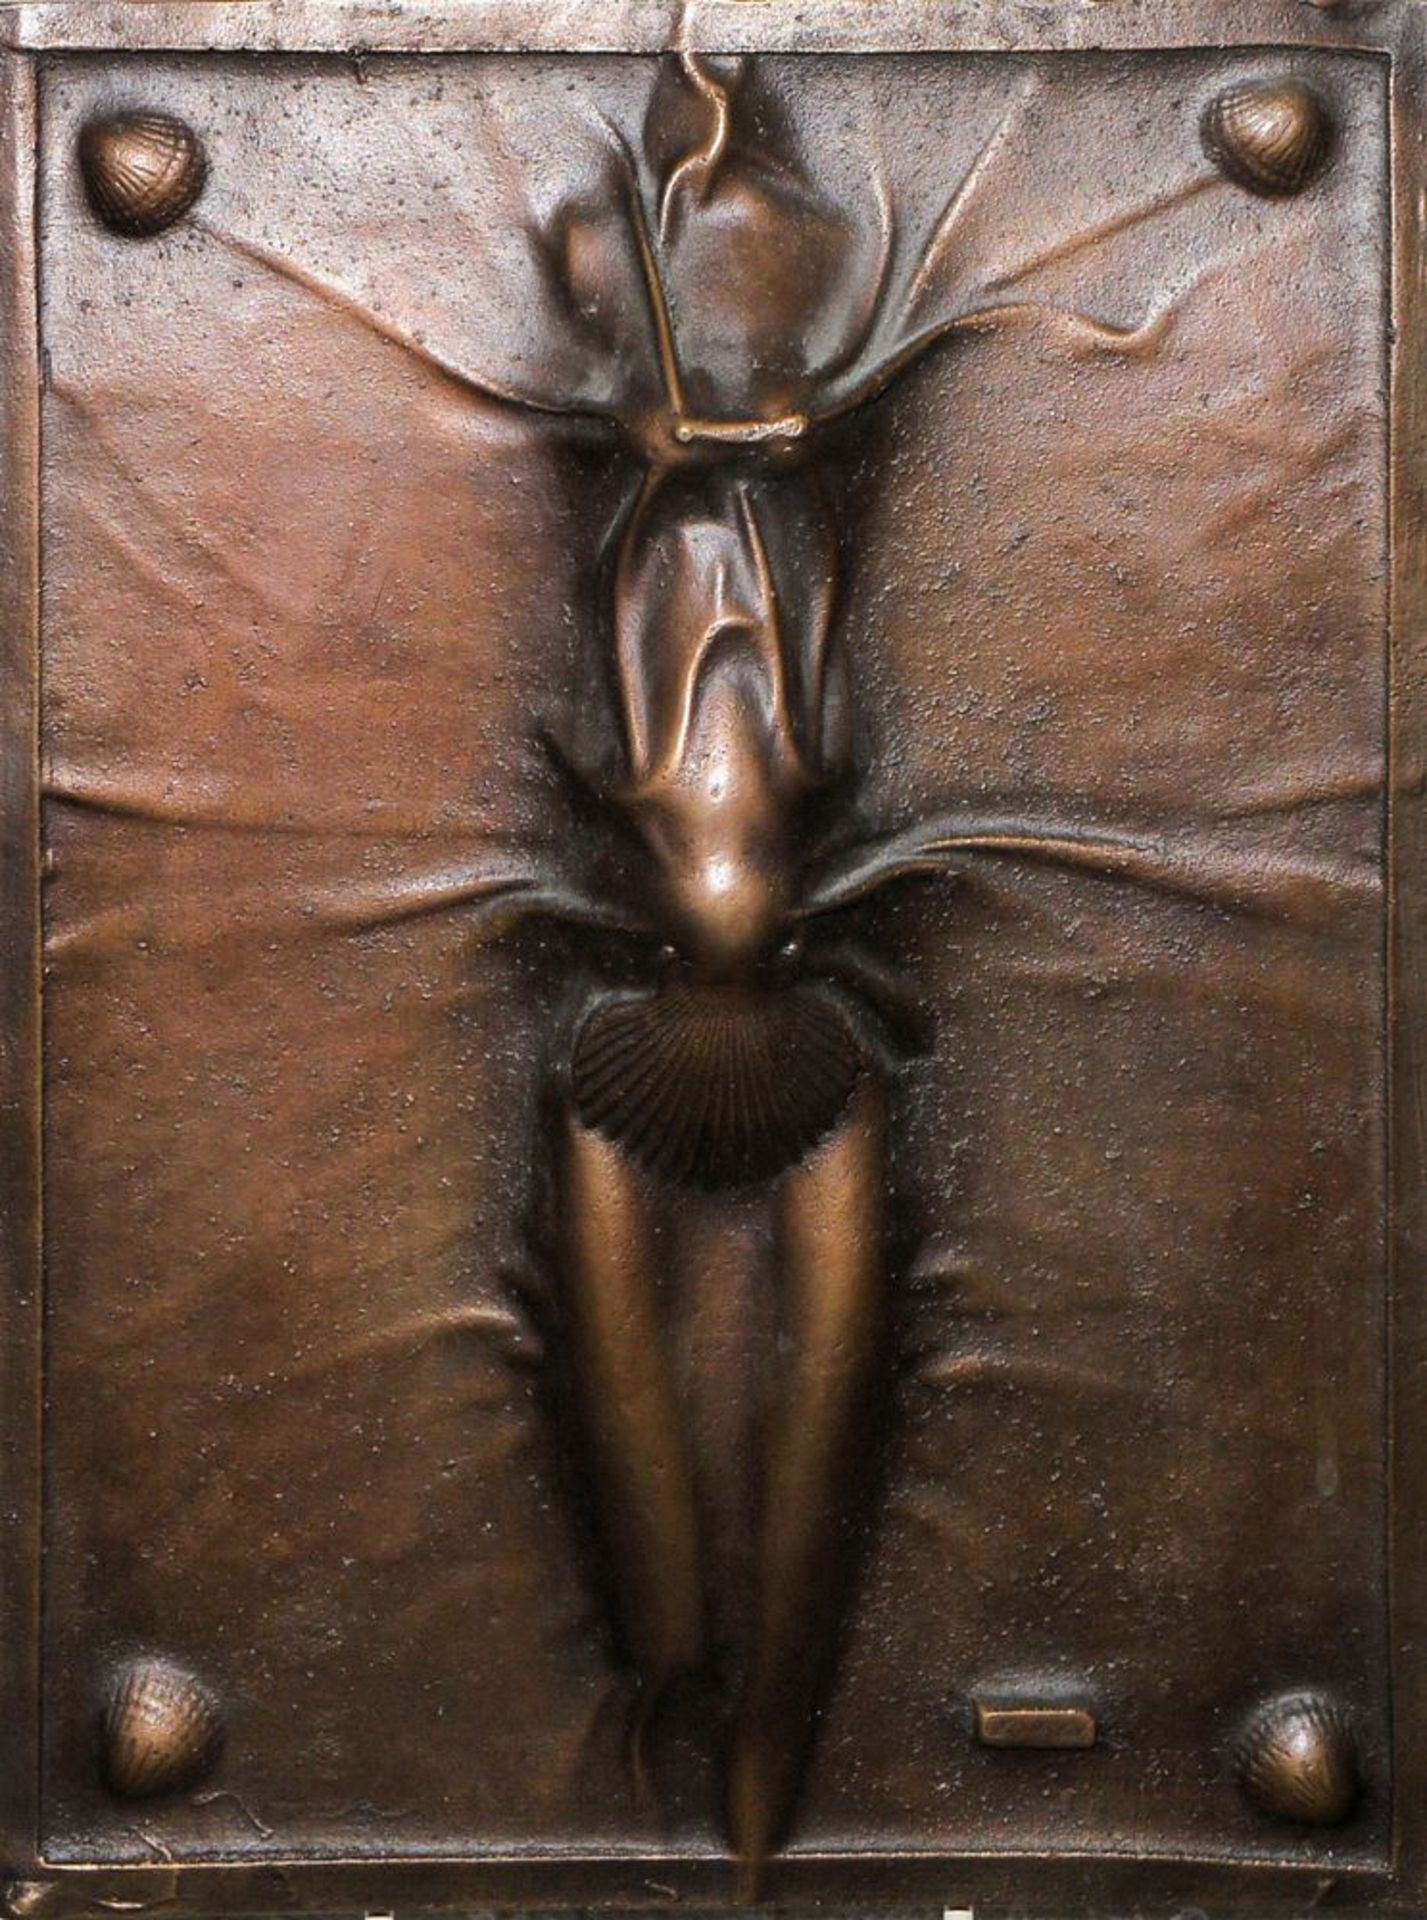 Paul Wunderlich, "Aphrodite", signiertes Bronzerelief von 1979